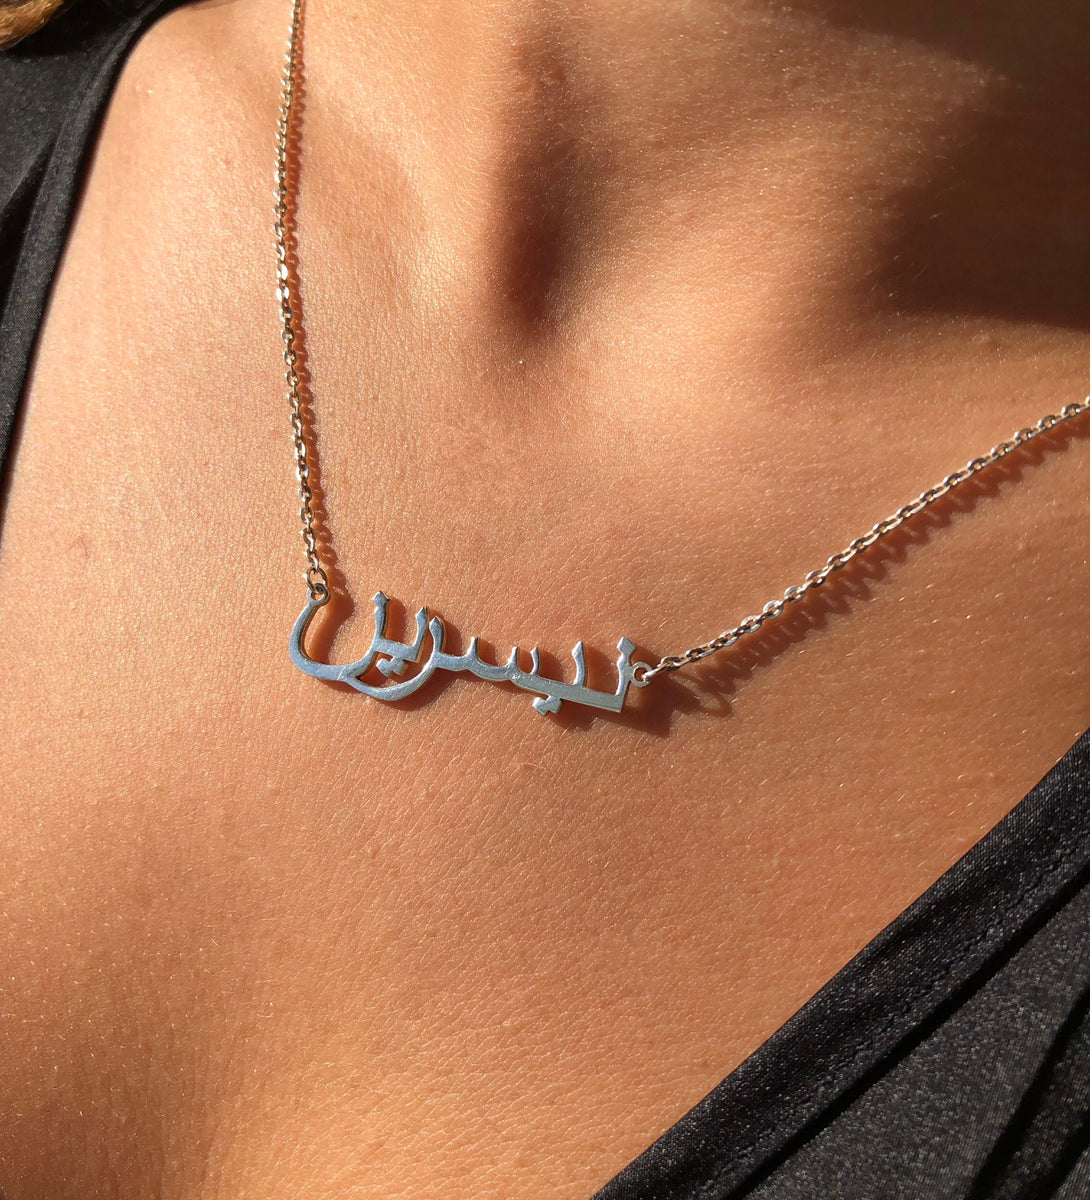 Arabic "NAME" Necklace - 18k Goud en Sterling Zilver – Arabic Jewelry